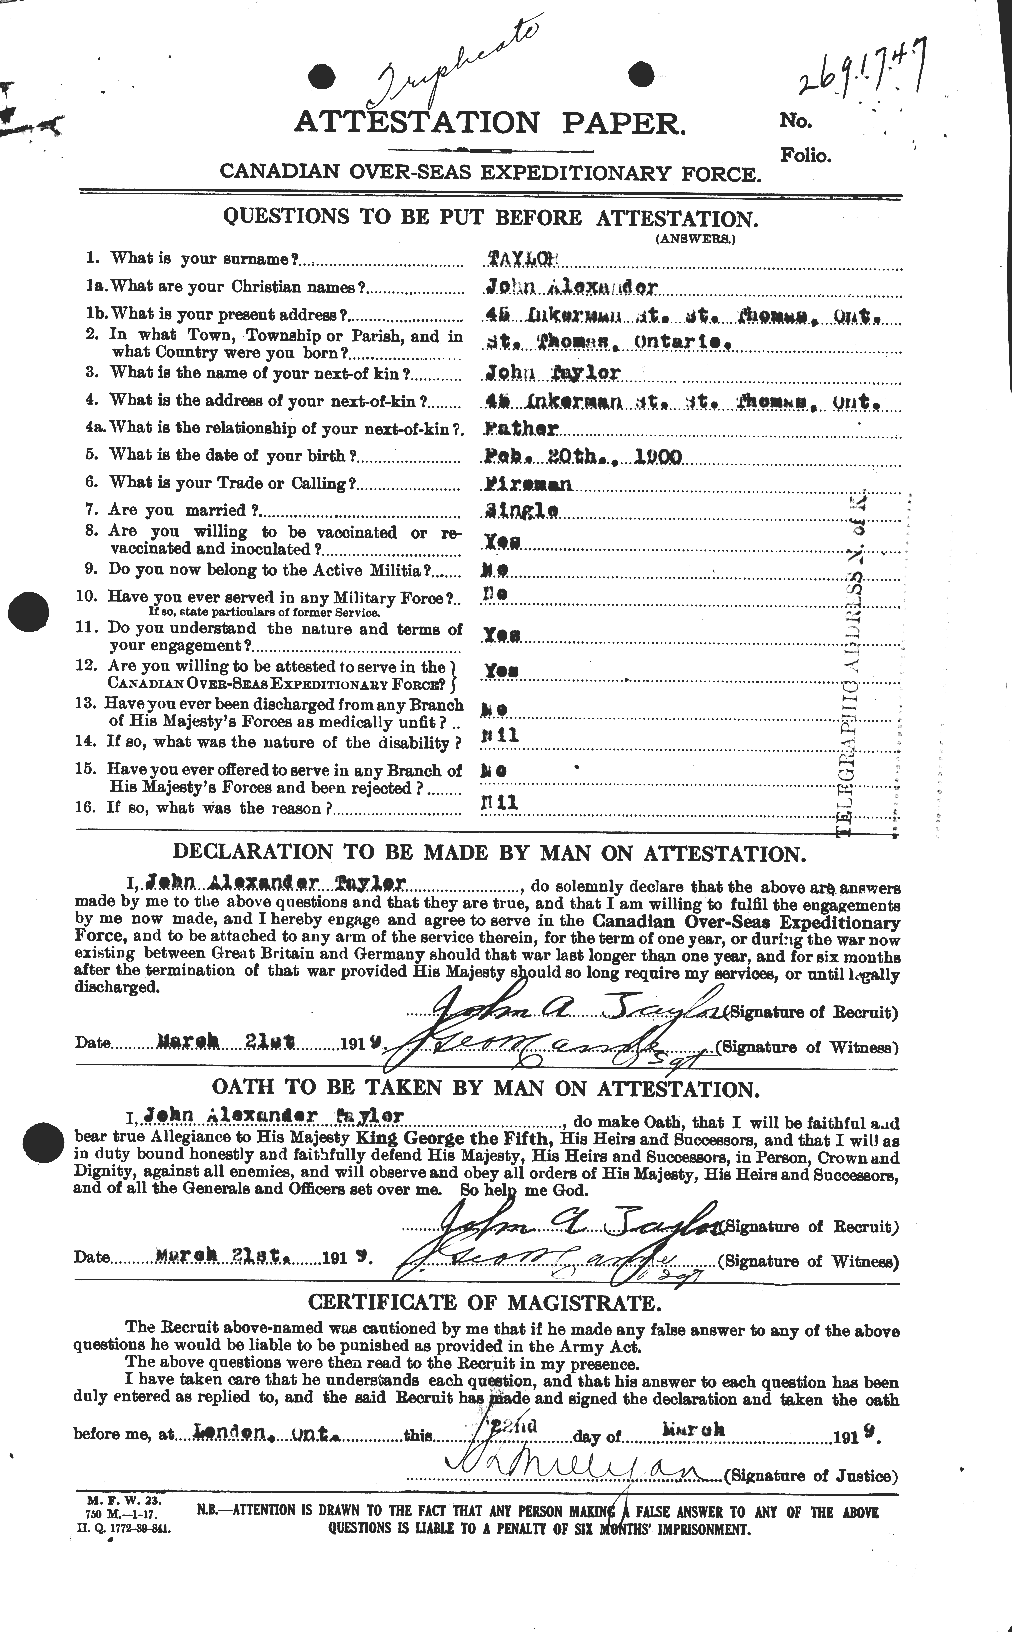 Dossiers du Personnel de la Première Guerre mondiale - CEC 627041a